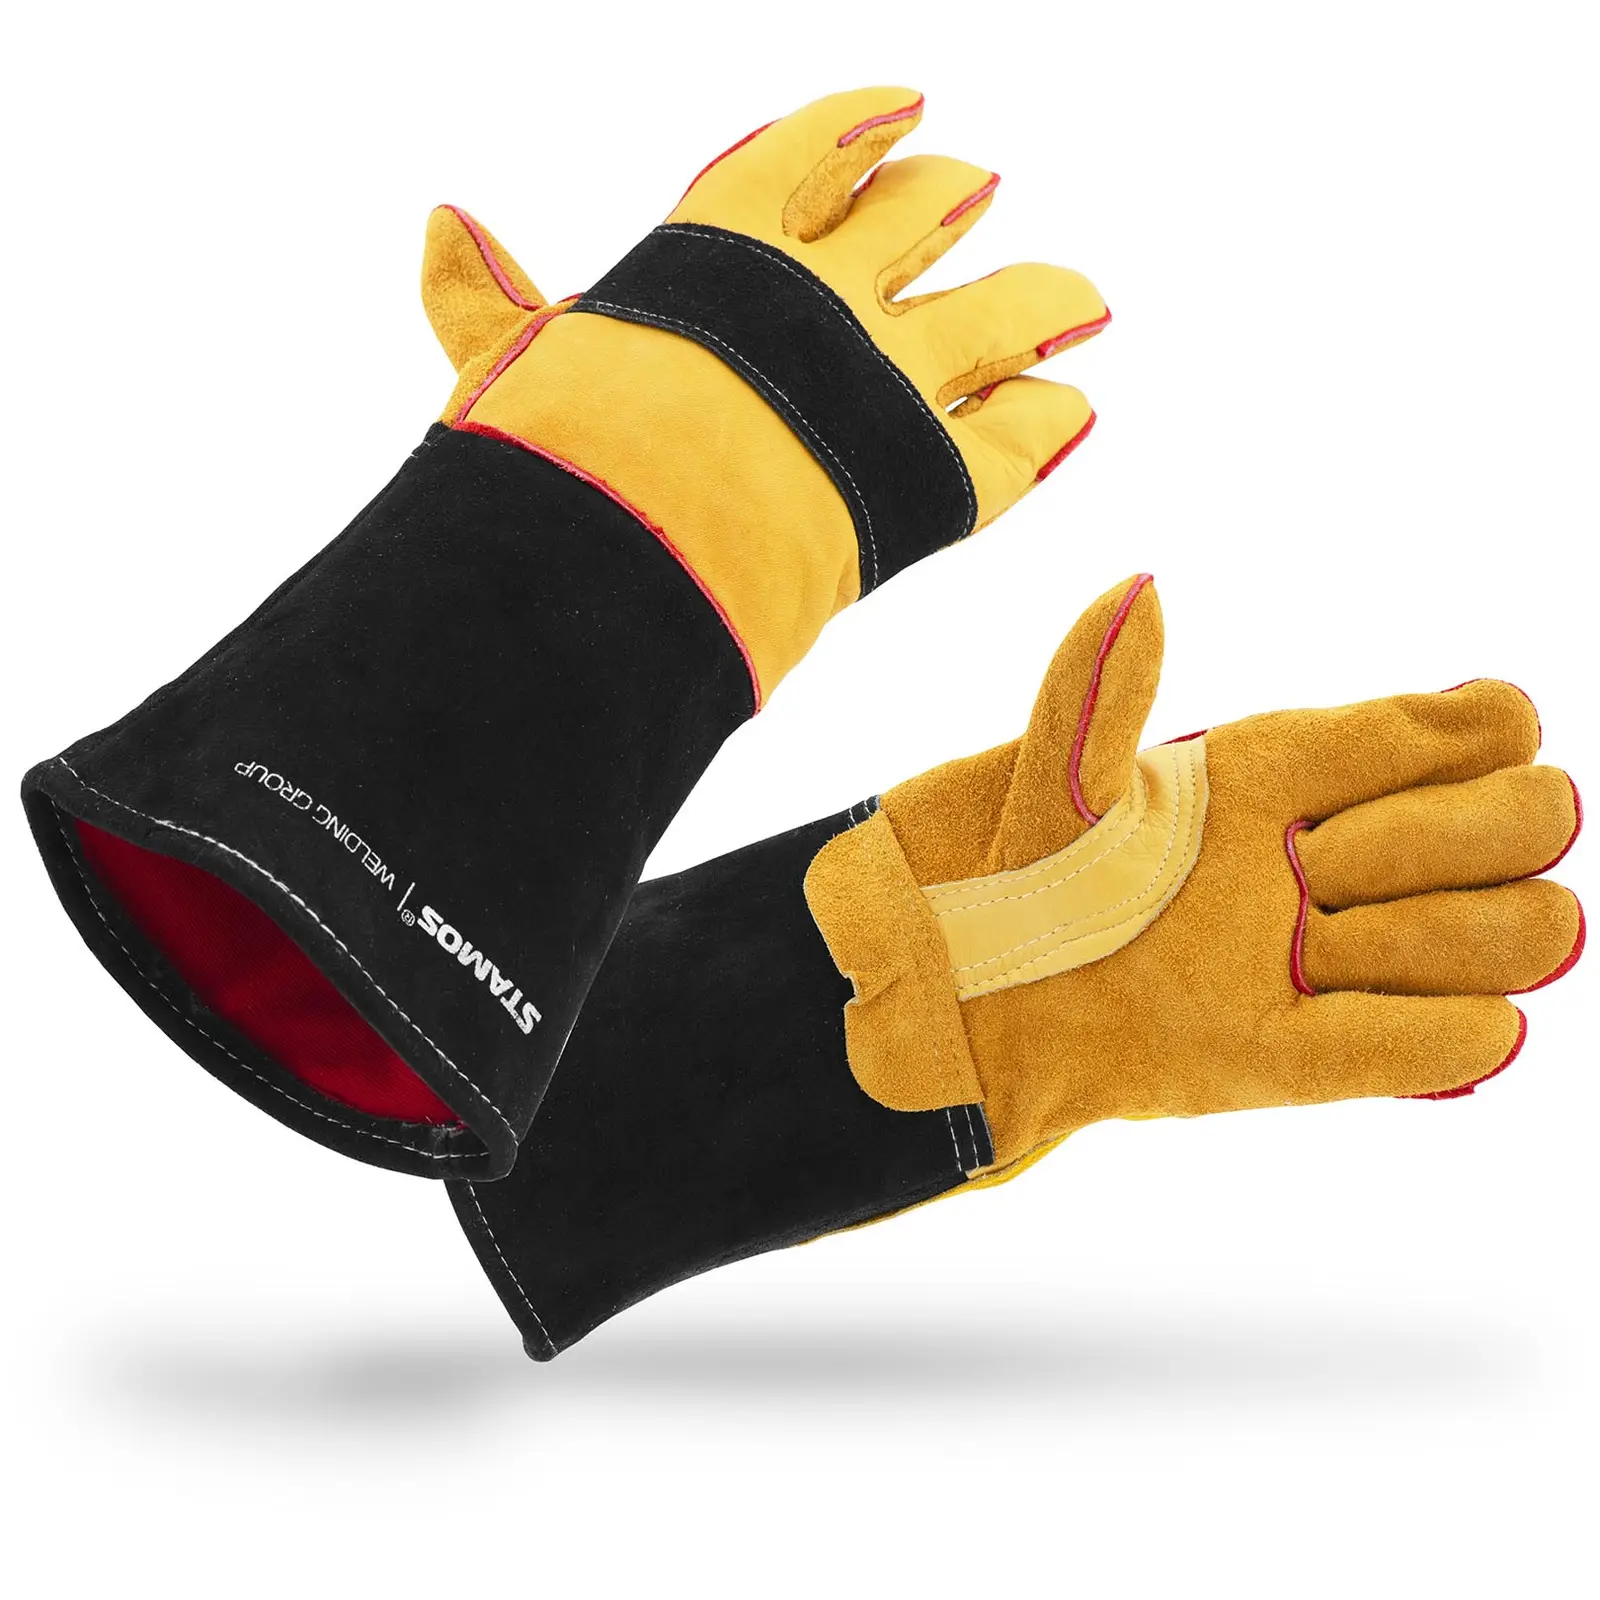 Welding Gloves - size M